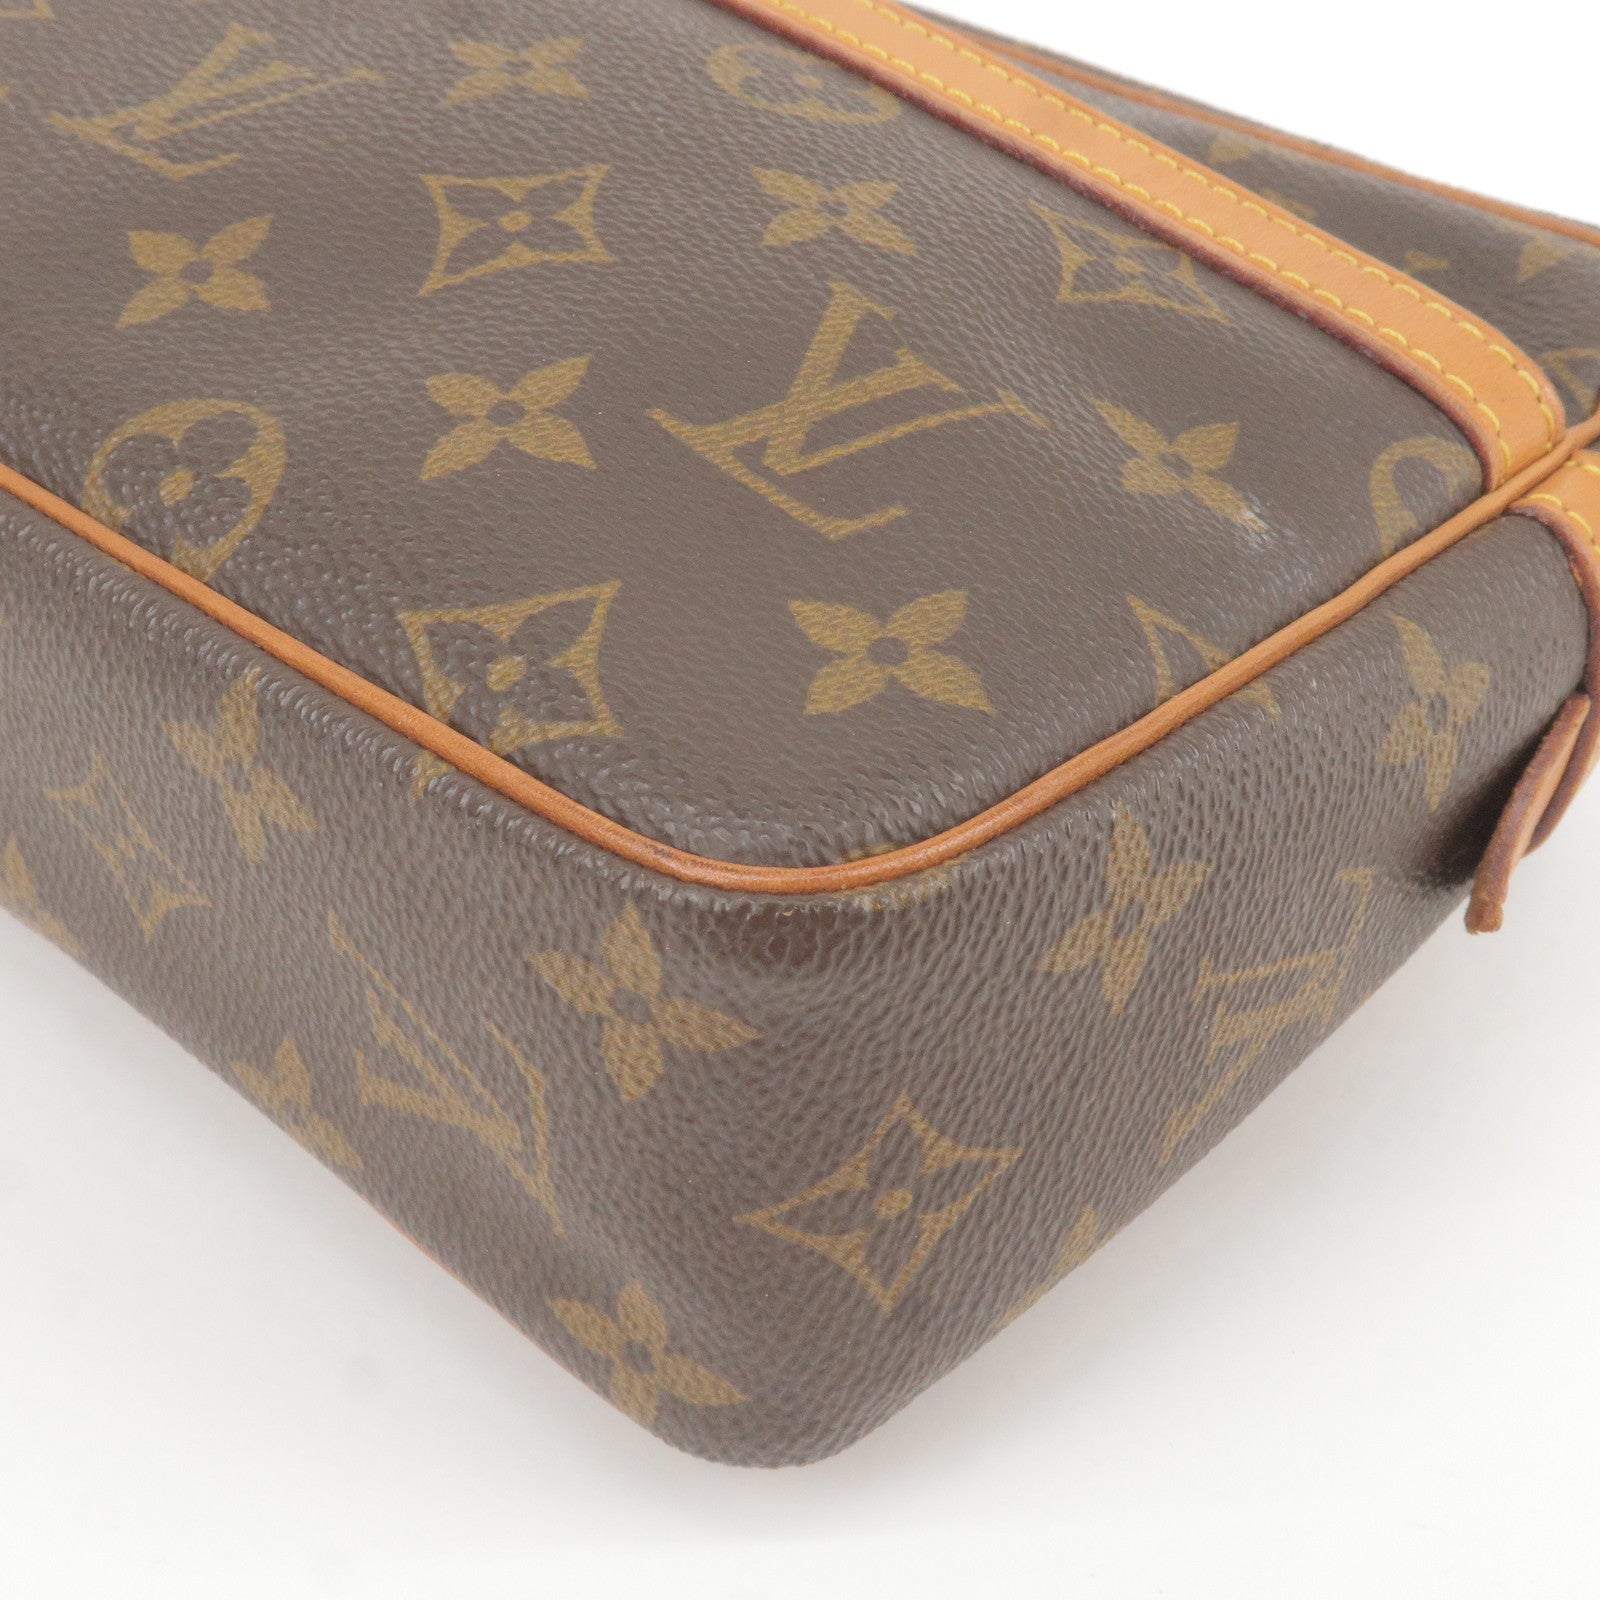 Louis Vuitton LV Classic Jacquard Metis Messenger Bag Women's Leather